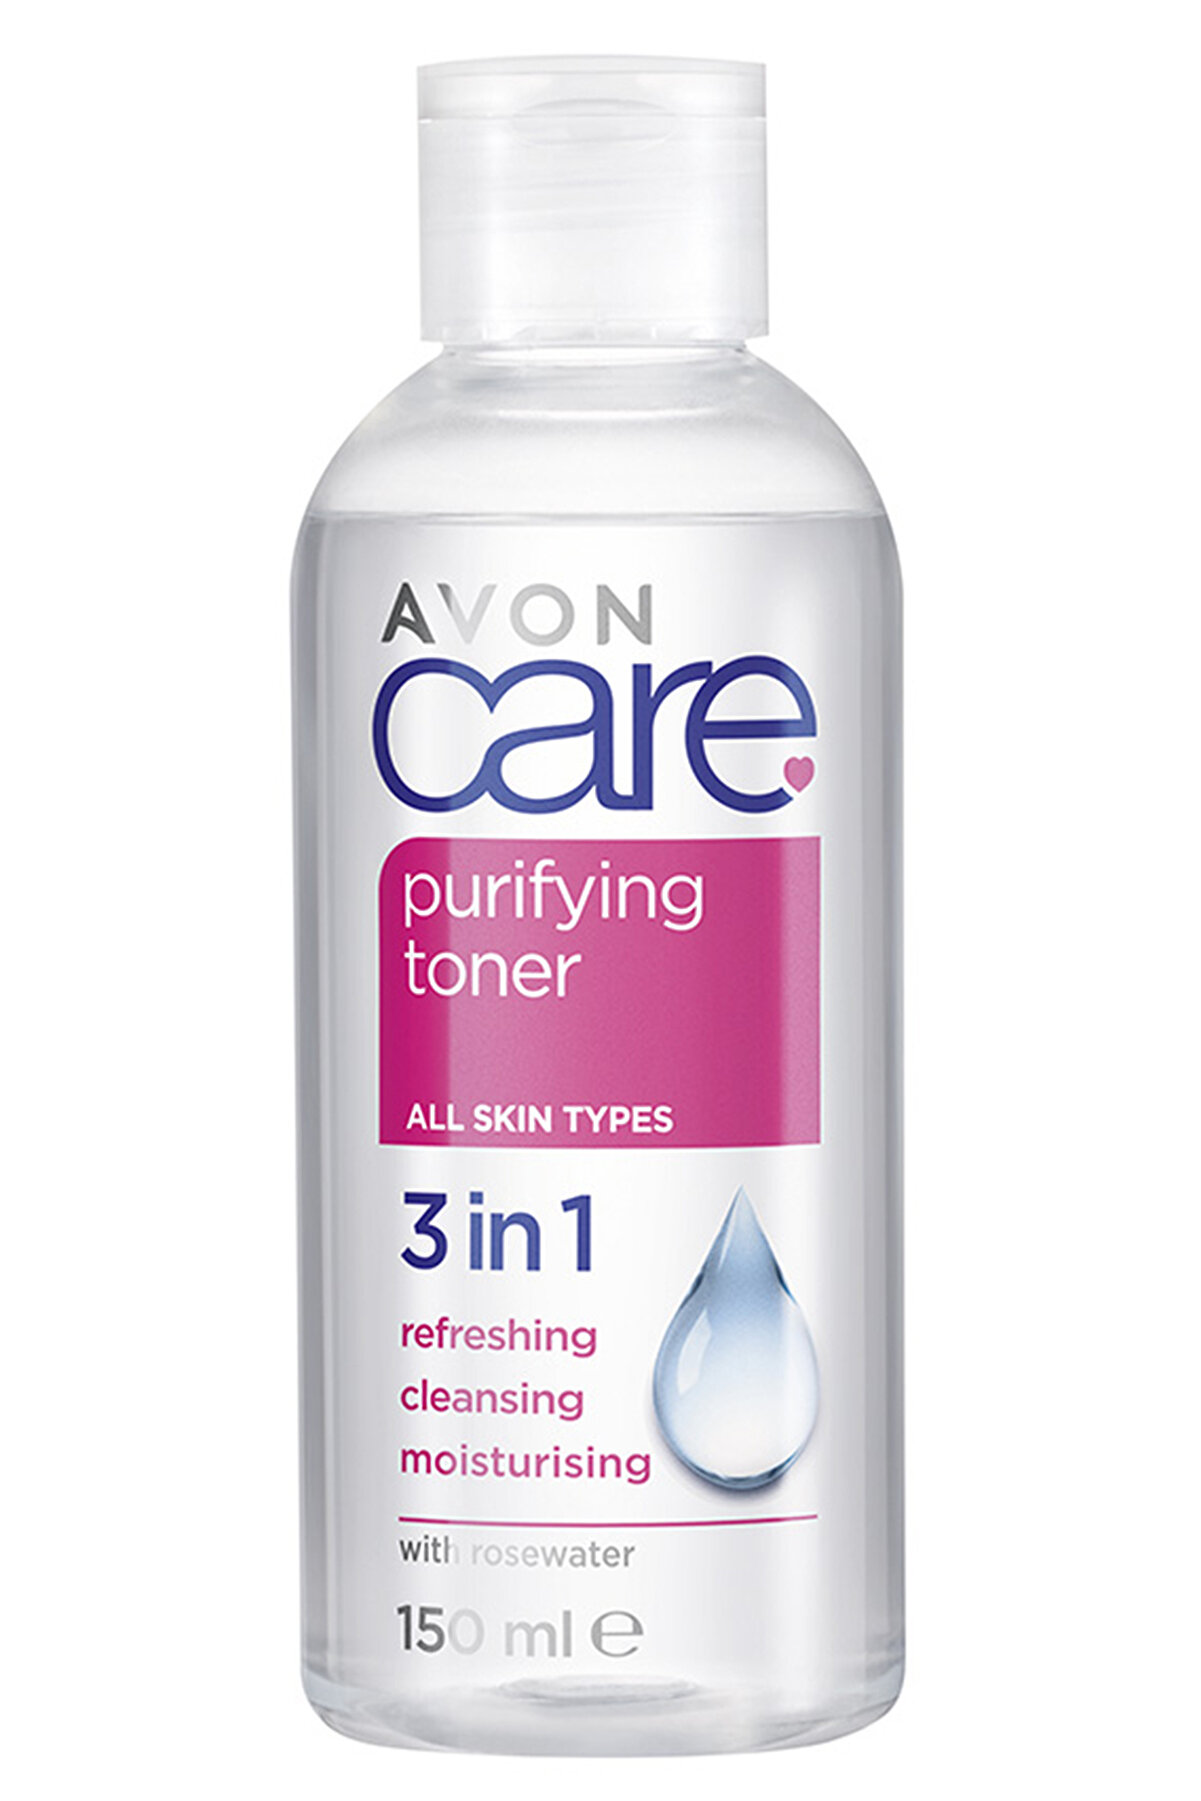 Avon Care Purifying Toner 3 In 1 Gül Suyu Içeren Cilt Temizleme Toniği 150 Ml.